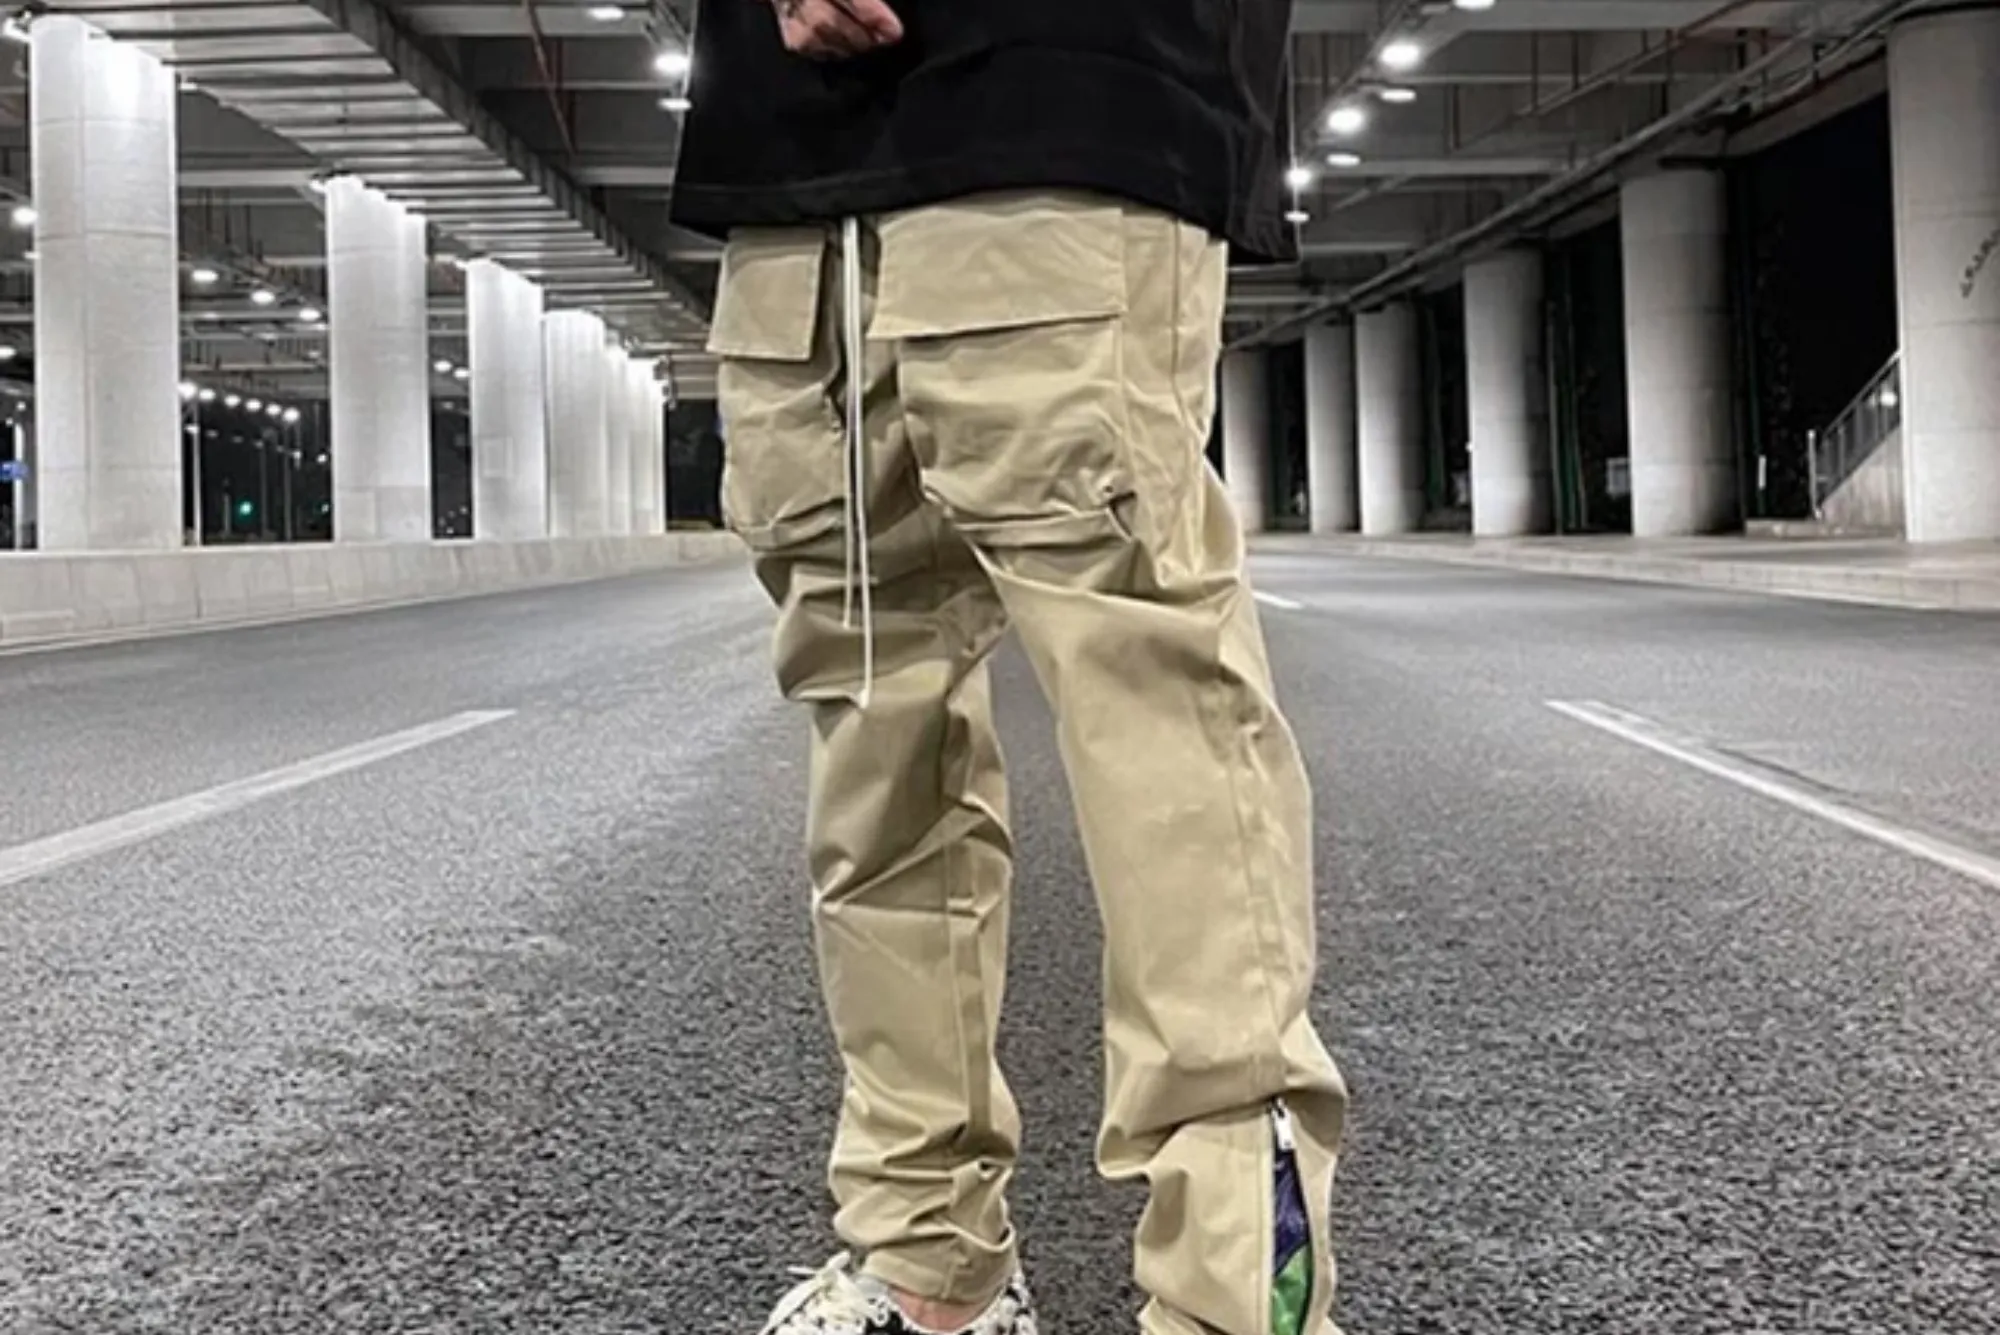 khaki cargo pants